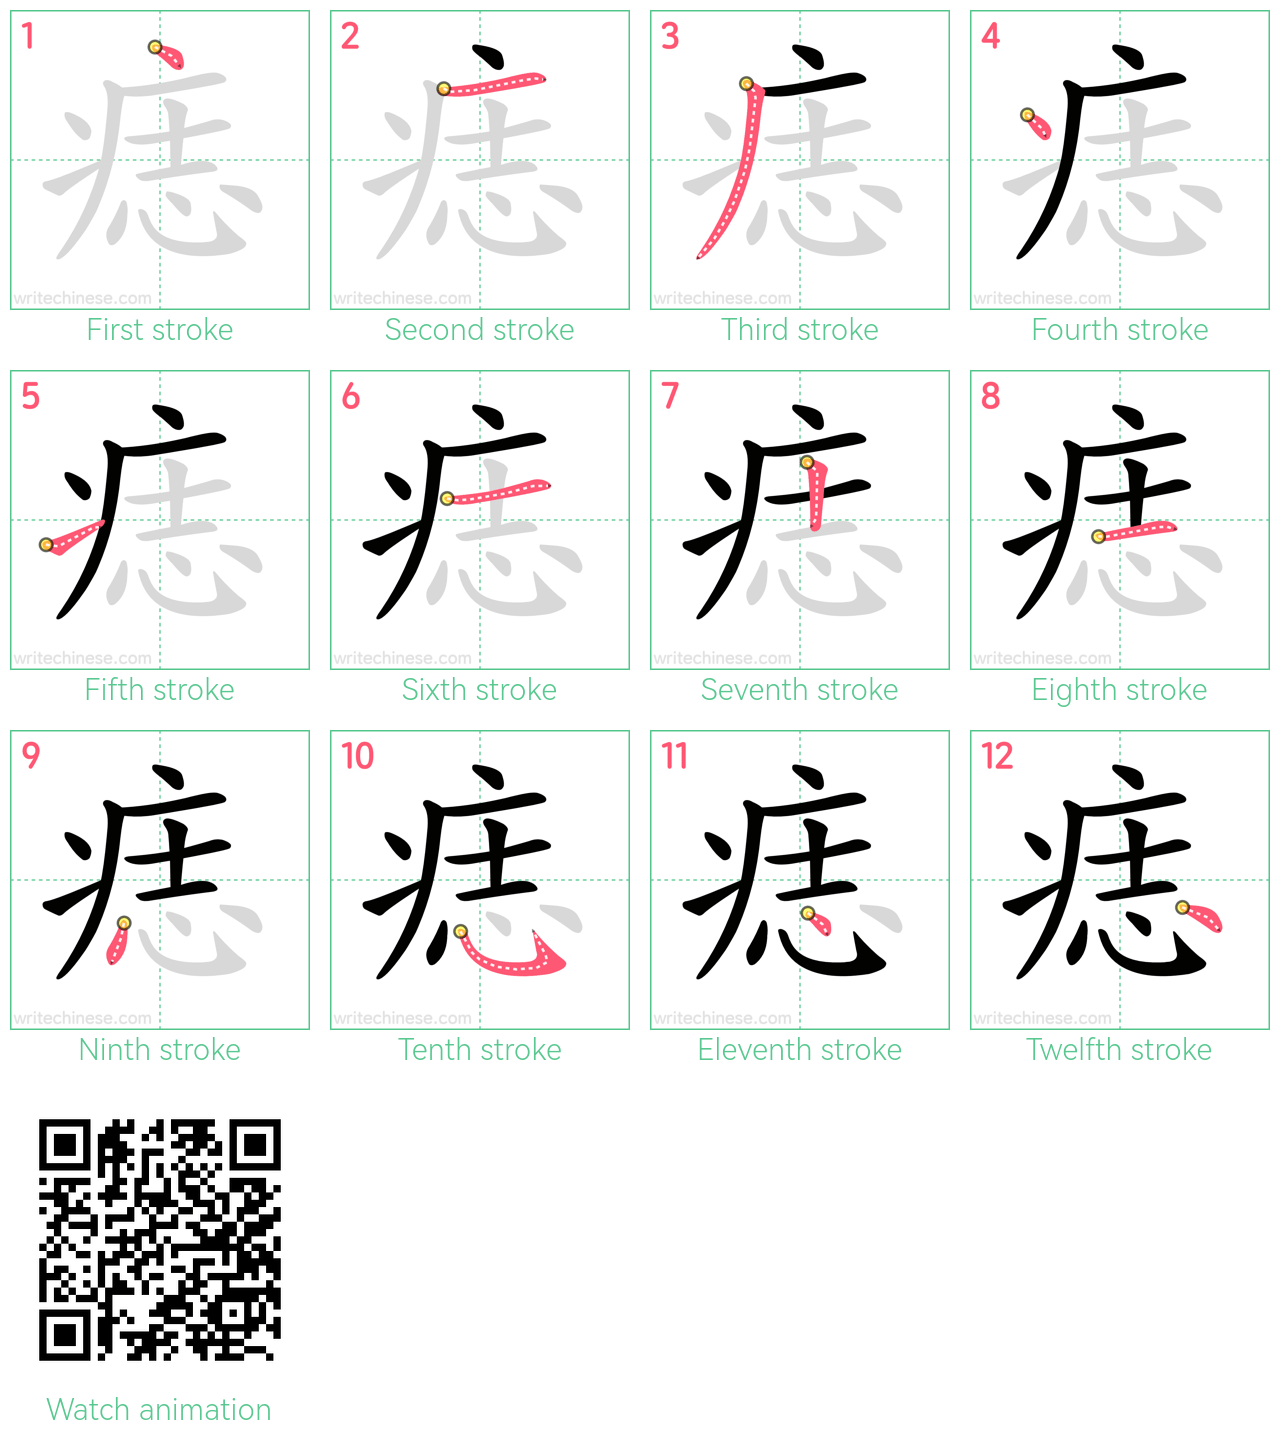 痣 step-by-step stroke order diagrams